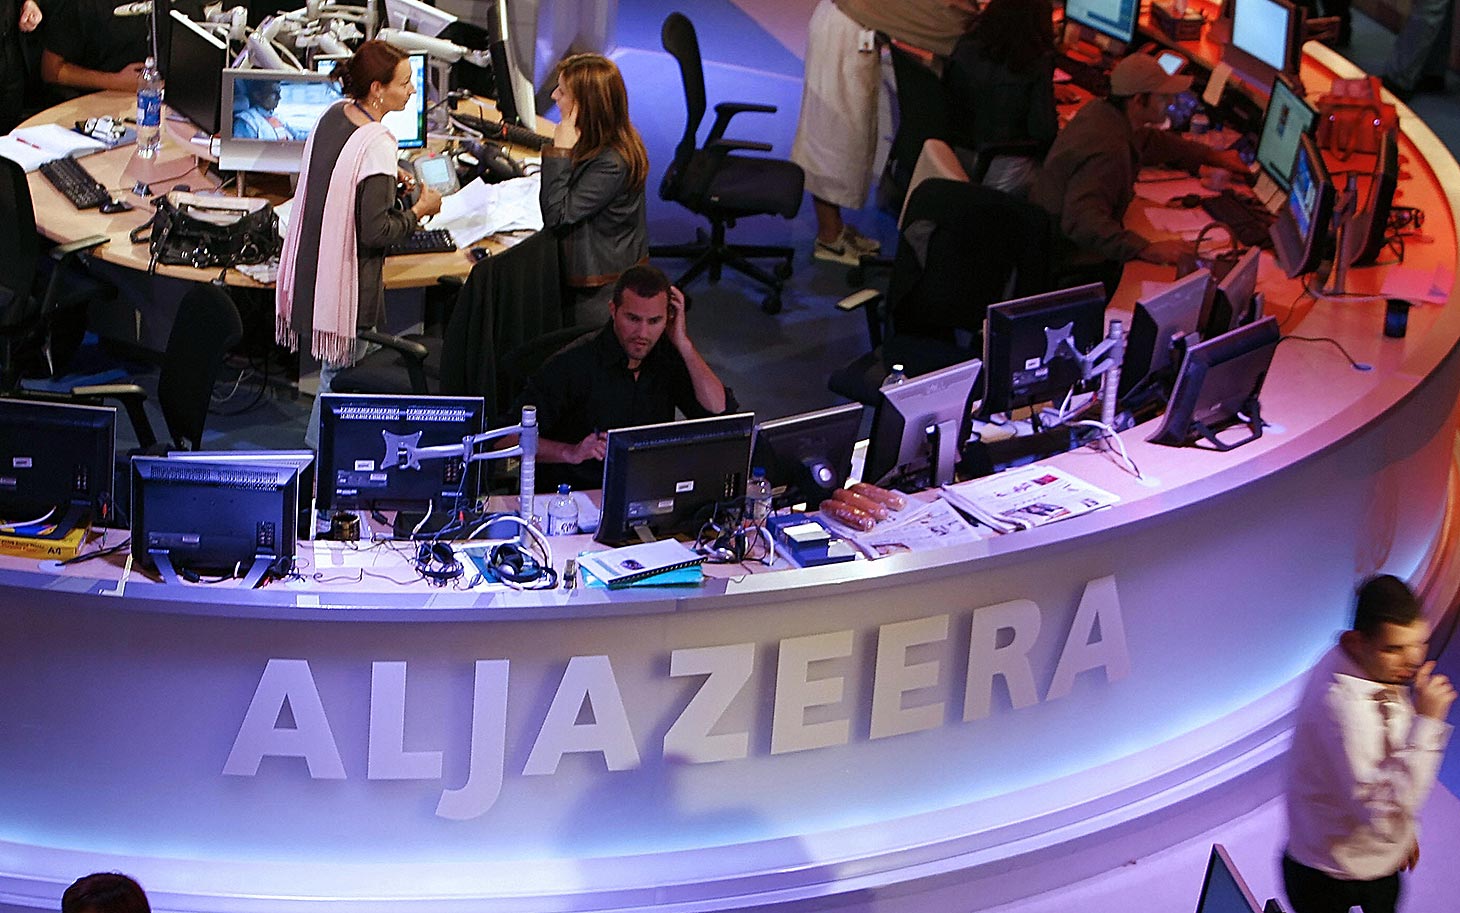 Al Jazeera to U.S. newsrooms: Avoid the words ‘terrorist’, ‘Islamist’, ‘jihad’